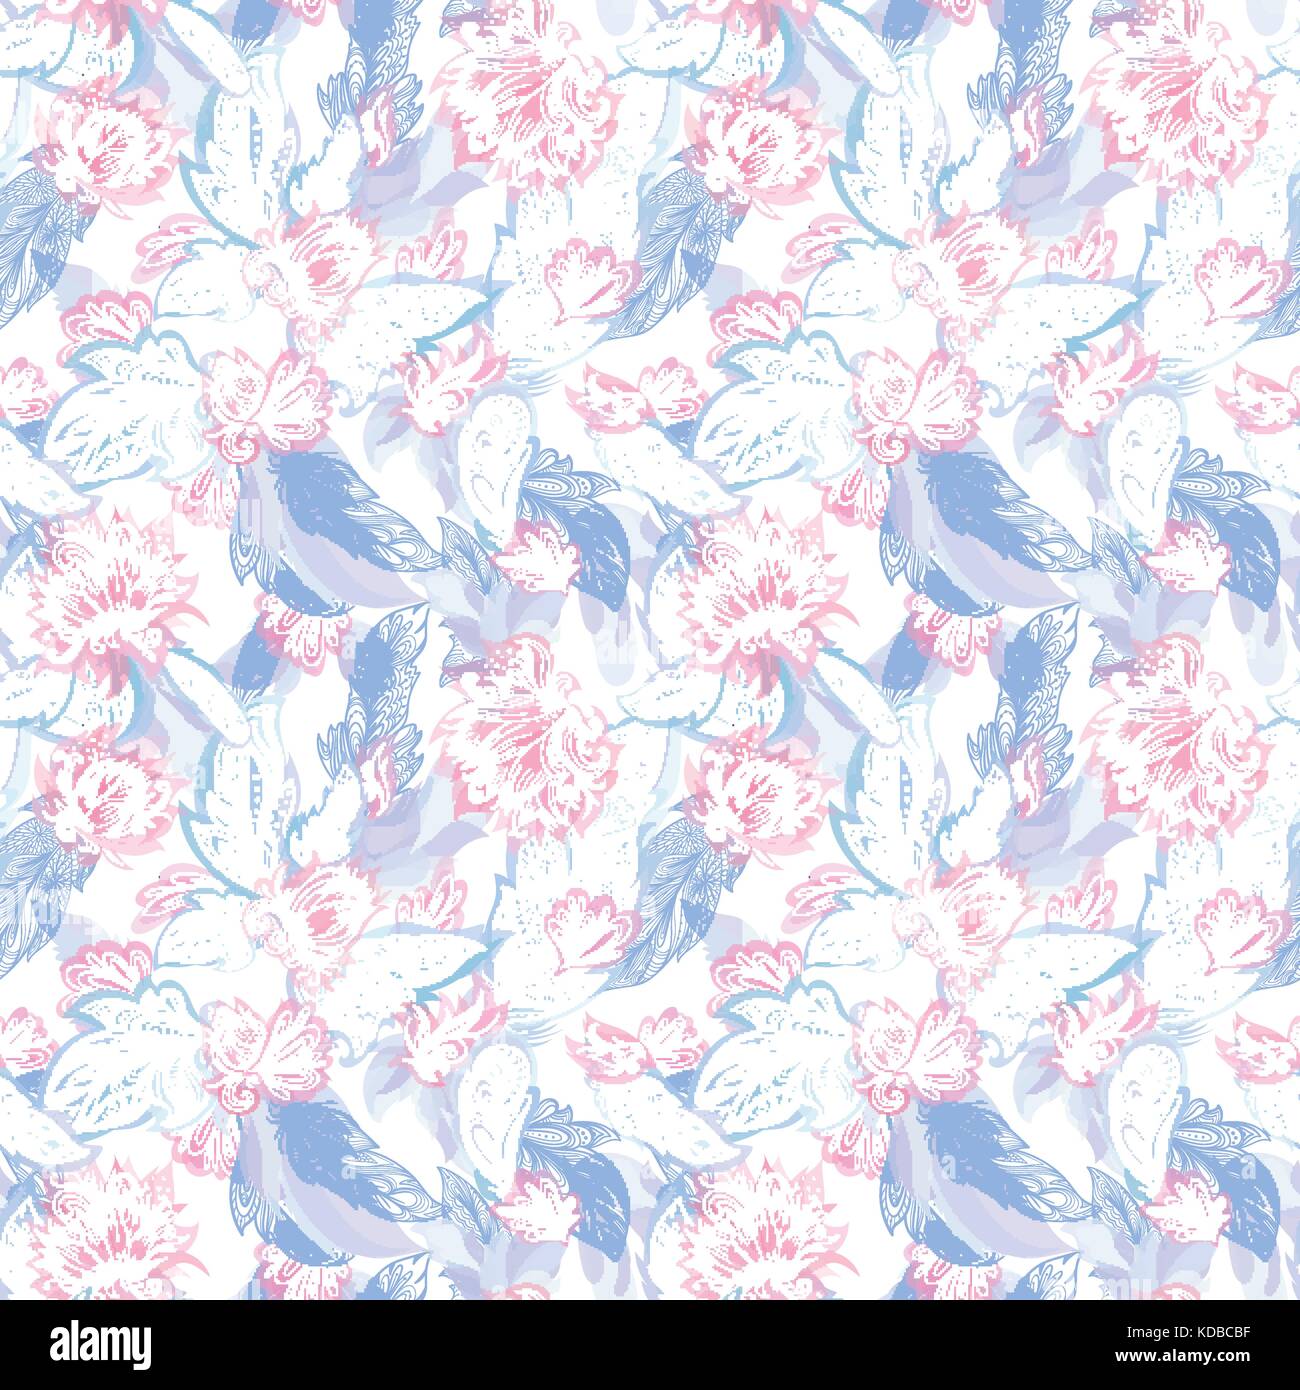 Gara perfetta texture con doodle fiori ornamentali ed elementi tribali in pastello rosa e blu su sfondo bianco Illustrazione Vettoriale